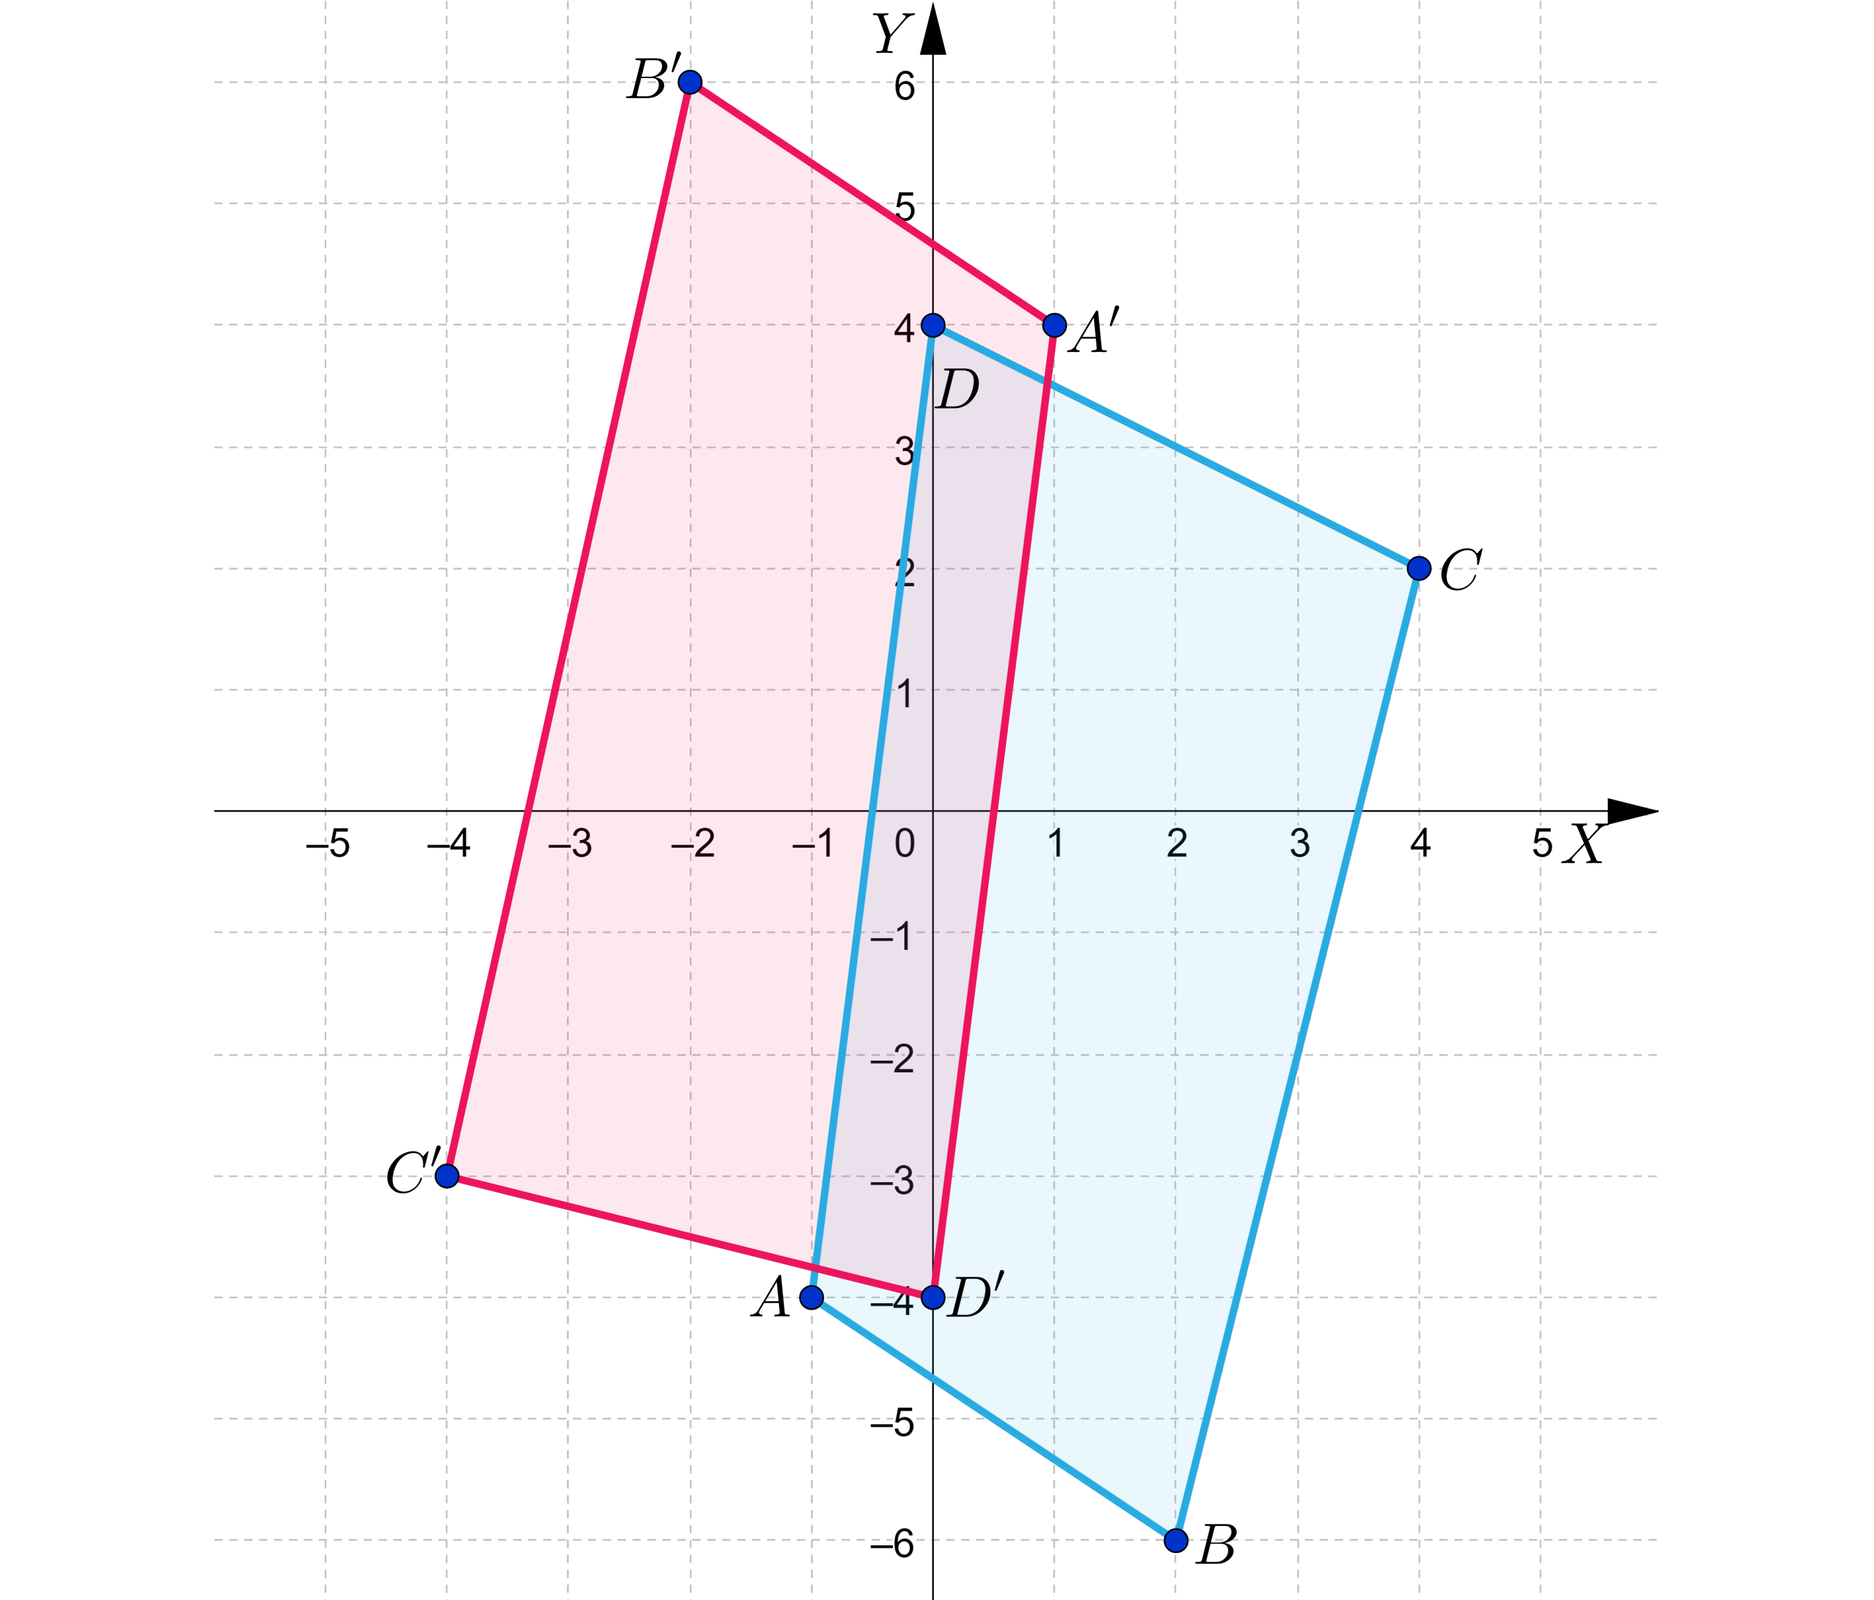 Ilustracja przedstawia układ współrzędnych z poziomą osią X od minus pięciu do pięciu oraz z pionową osią Y od minus sześciu do sześciu. Na płaszczyźnie zaznaczono zamalowanymi kółkami cztery punkty, które połączono ze sobą, tworząc czworokąt oraz kolejne cztery punkty, będące symetrycznymi odbiciami wyjściowych punktów względem początku układu współrzędnych. Punkty symetryczne również połączono w czworokąt. Punkty wyjściowe, będące wierzchołkami czworokąta ABCD mają współrzędne: A=-1;-4, B=2;-6, C=4;2, D=0;4. Punkty do nich symetryczne będące wierzchołkami czworokąta A'B'C'D' mają współrzędne: A'=1;4, B'=-2;6, C'=-4;-3, D'=0;-4. Wnętrza obu czworokątów są zamalowane.